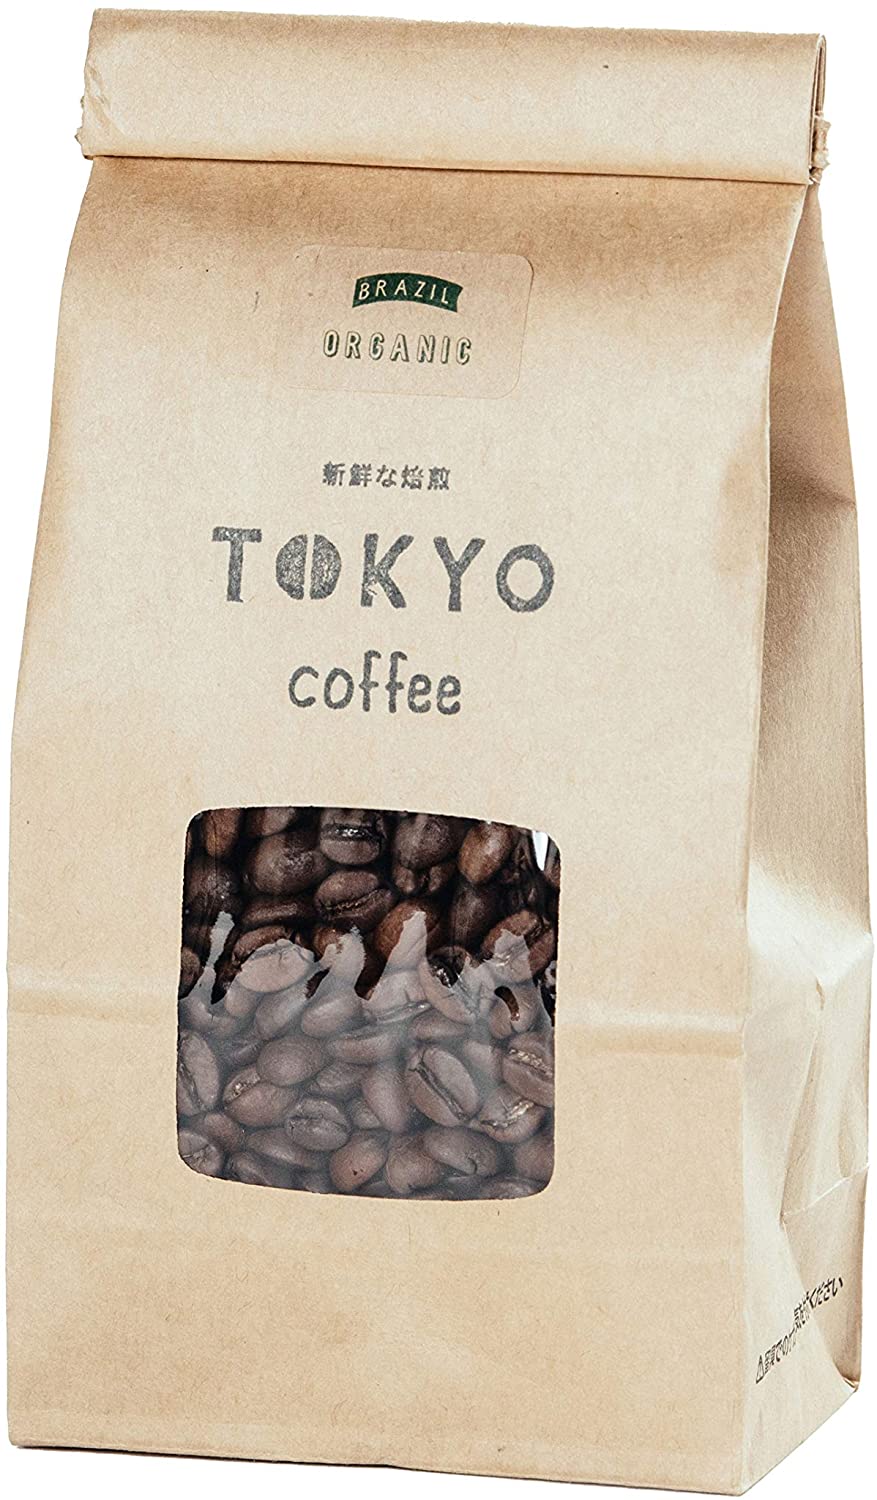 激安超安値 コーヒー豆 Coff Tokyo by ブラジル - ヘルシーで美味しい 無添加 コーヒー 自家焙煎 レギュラーコーヒー